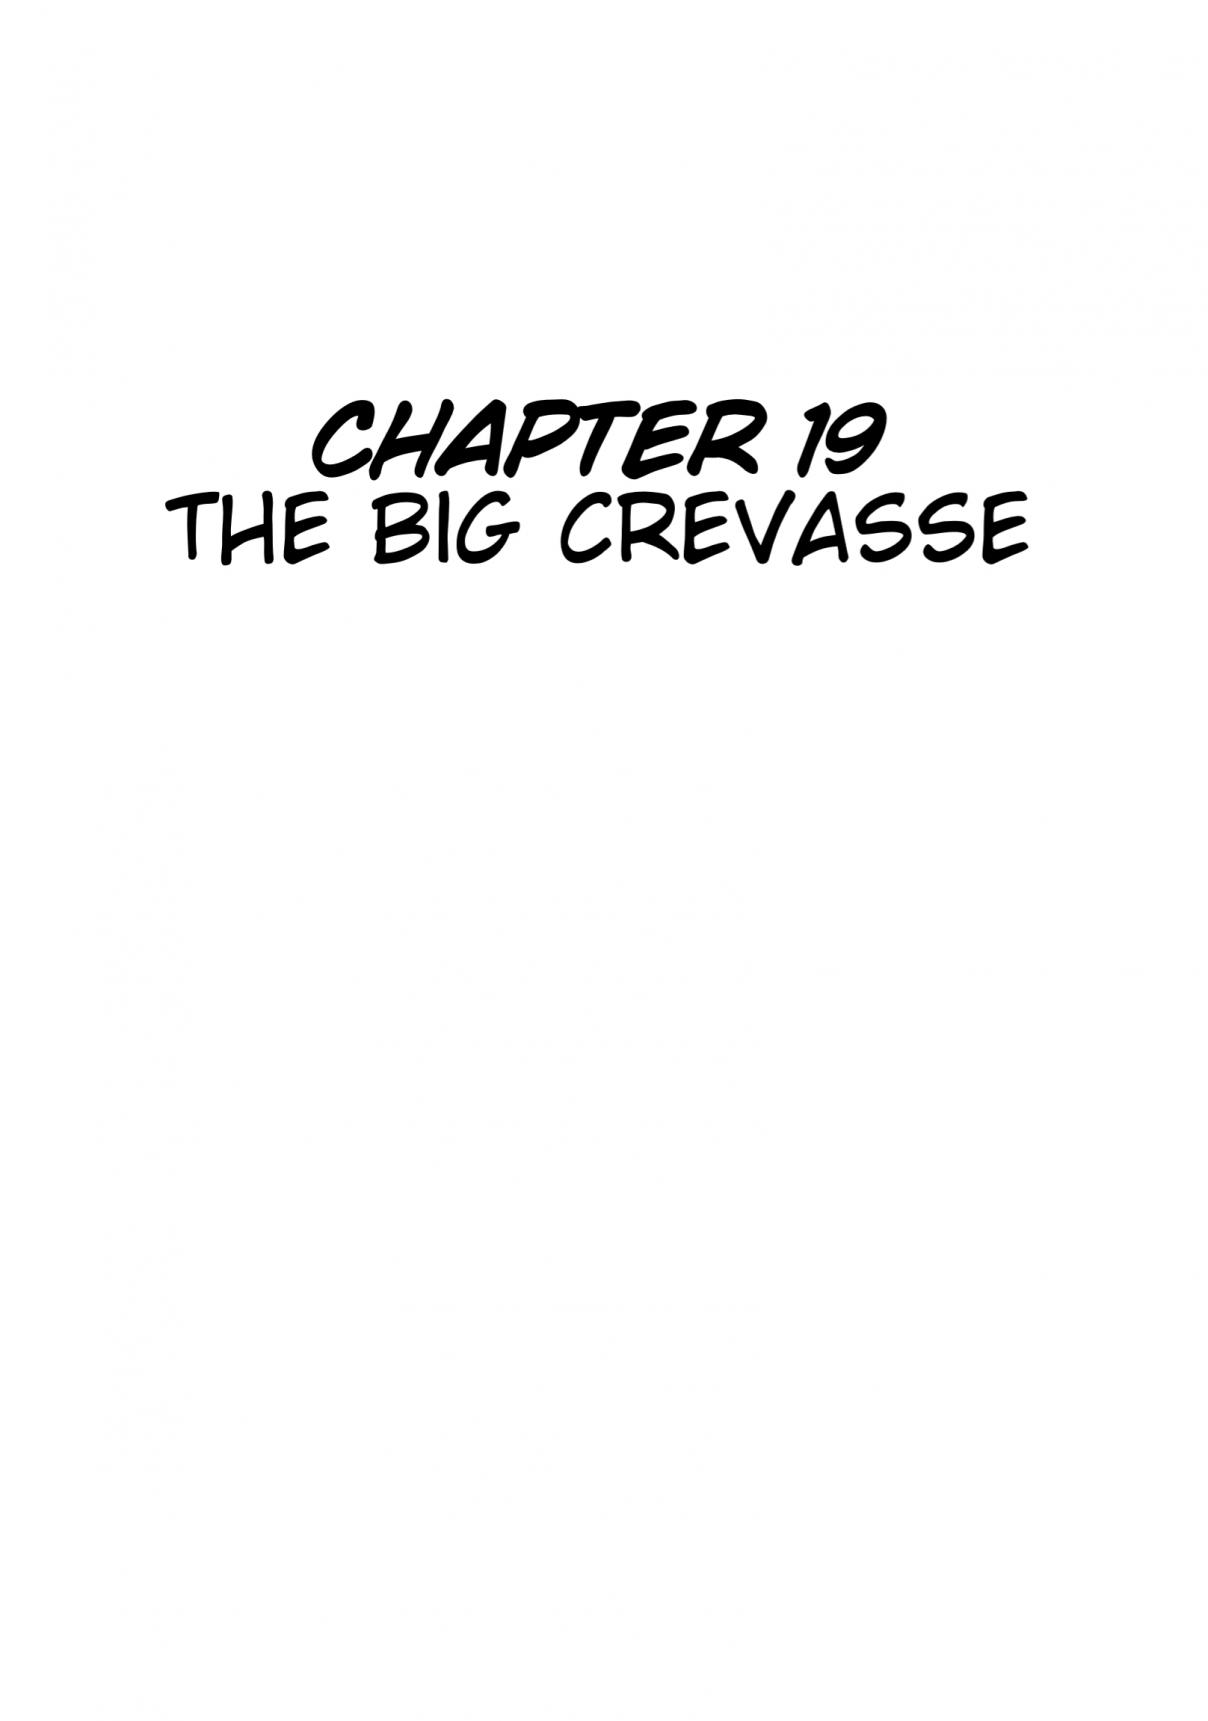 Jungle Emperor Leo Vol. 3 Ch. 19 The Big Crevasse